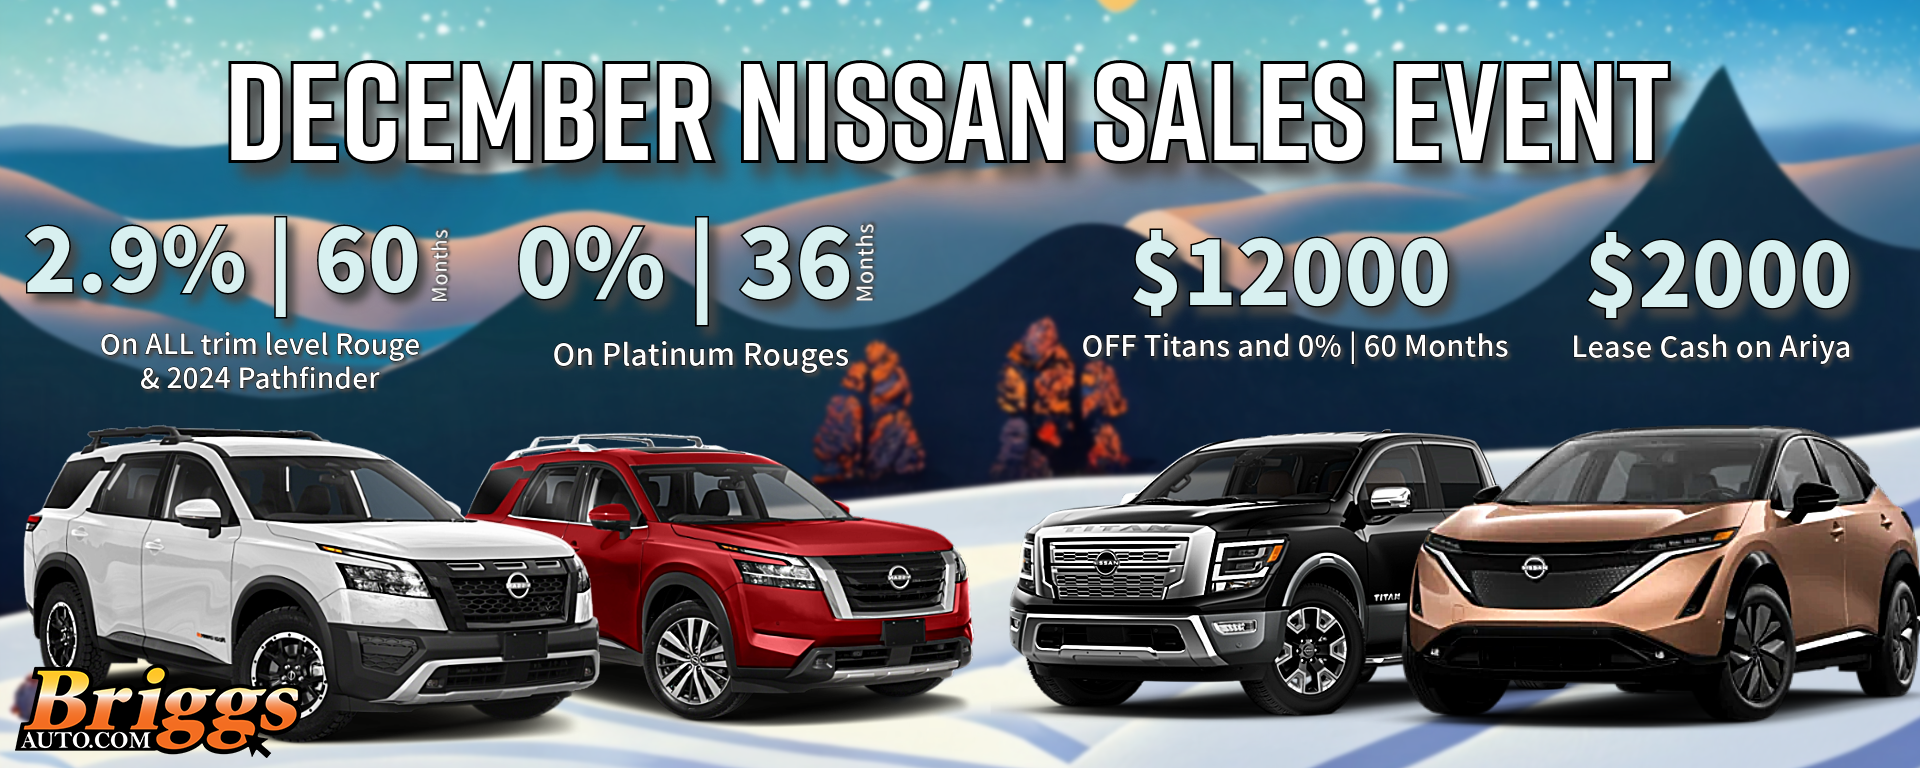 December Nissan Sales Event